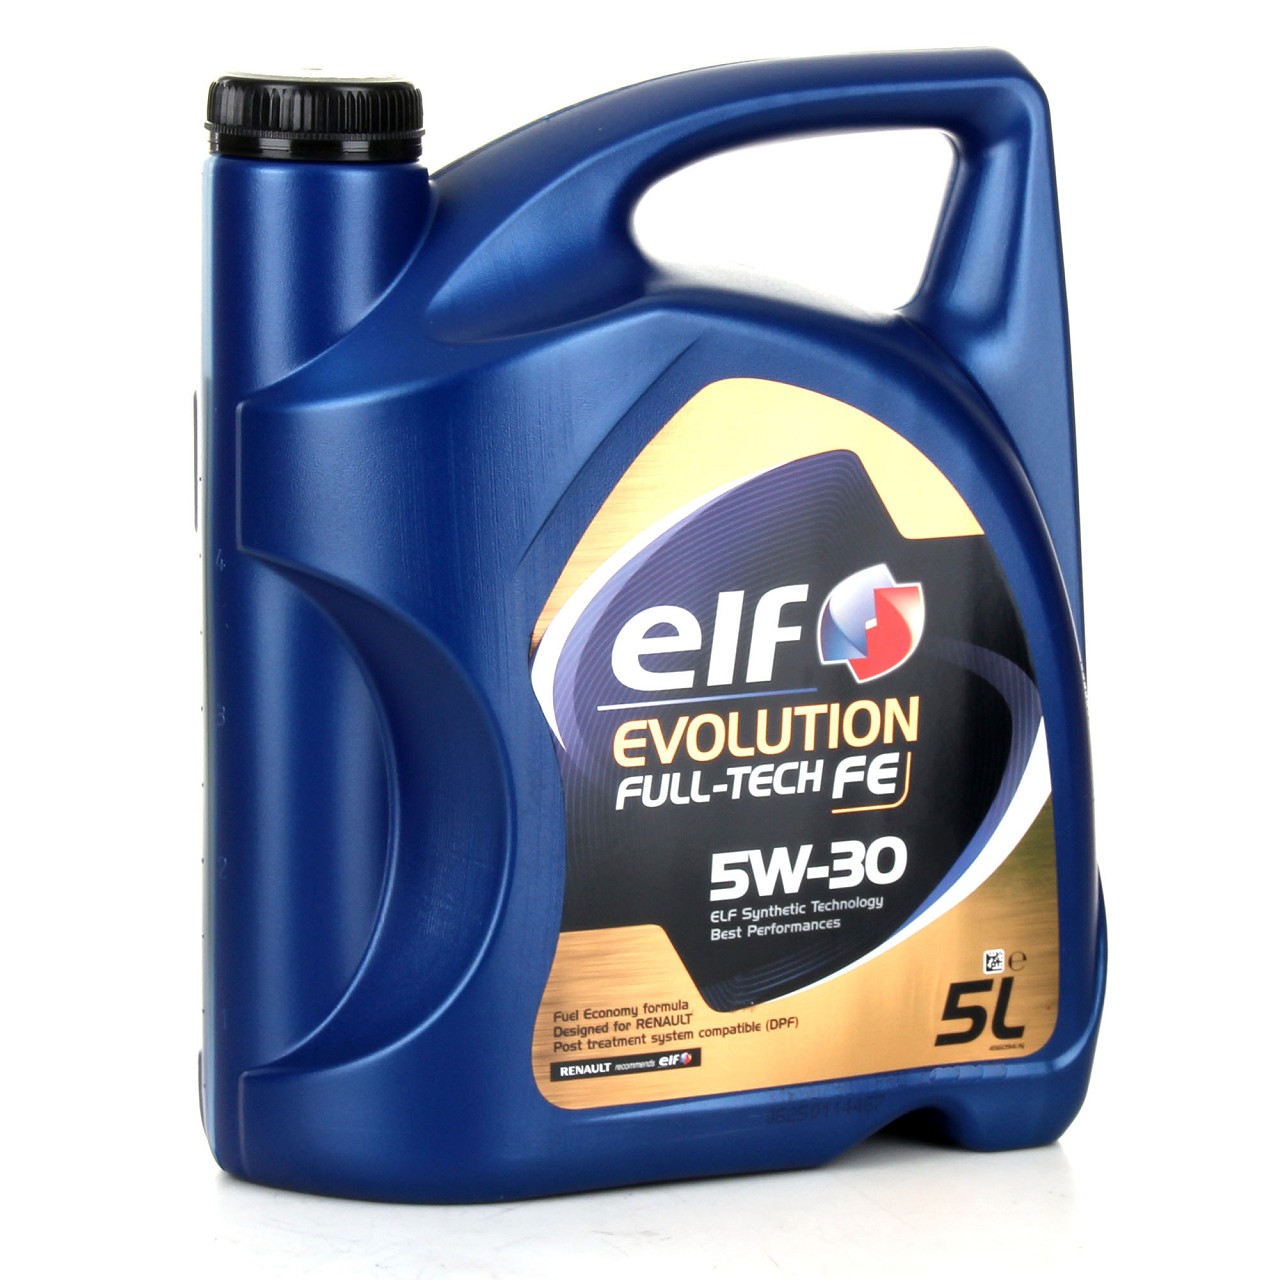 7L elf Evolution Full-Tech FE 5W-30 Motoröl ORIGINAL Renault Ölfilter 8200362442